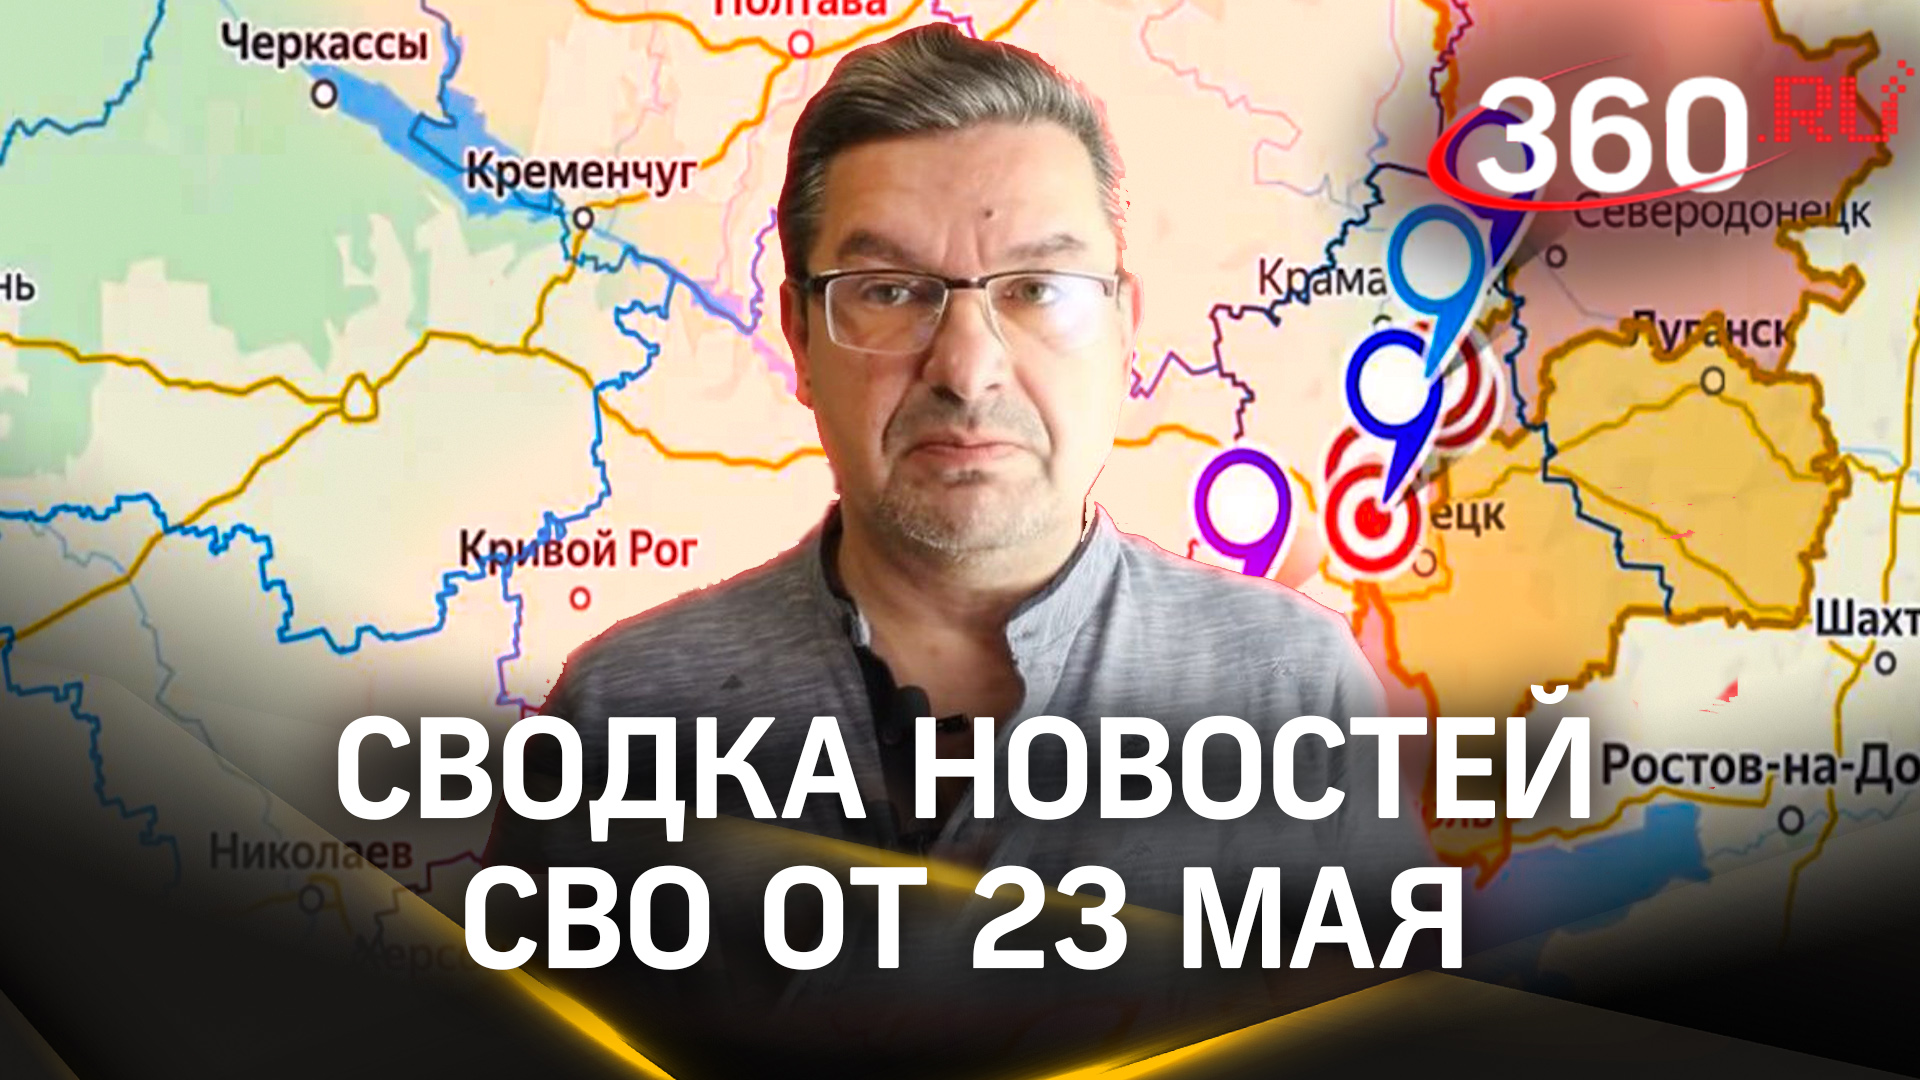 Онуфриенко: «Ухудшается положение к ВСУ на Угледарском фронте». Сводка новостей СВО от 23 мая